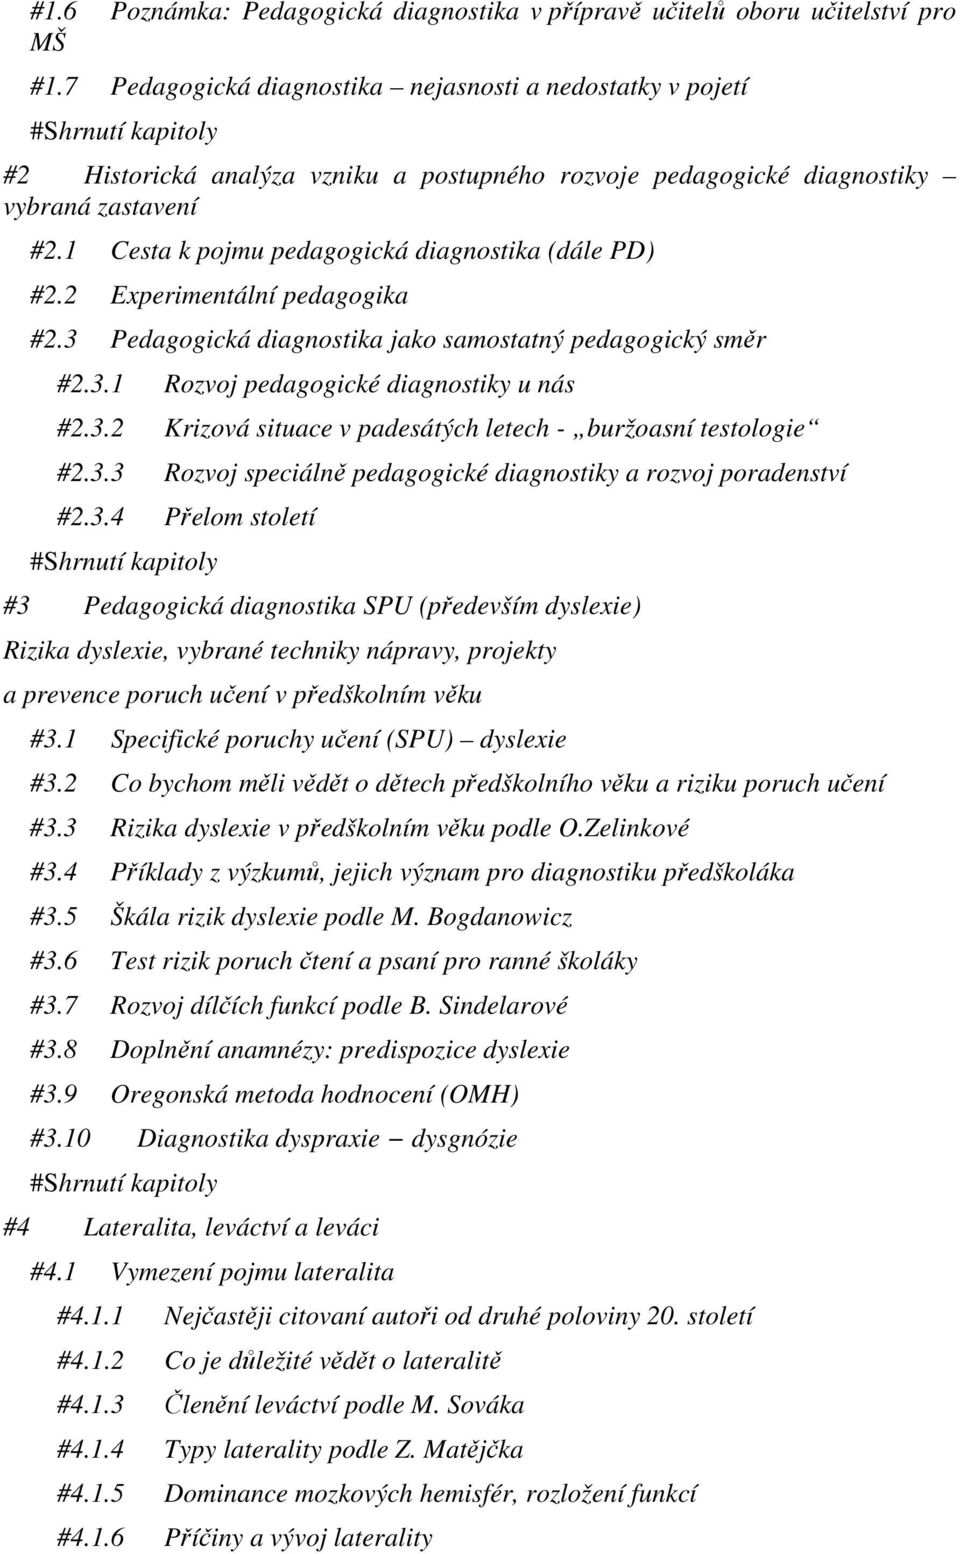 Pedagogická diagnostika dětského vývoje v praxi Název: Pedagogická  diagnostika dětského vývoje v praxi Autor: Jana Swierkoszová - PDF Free  Download